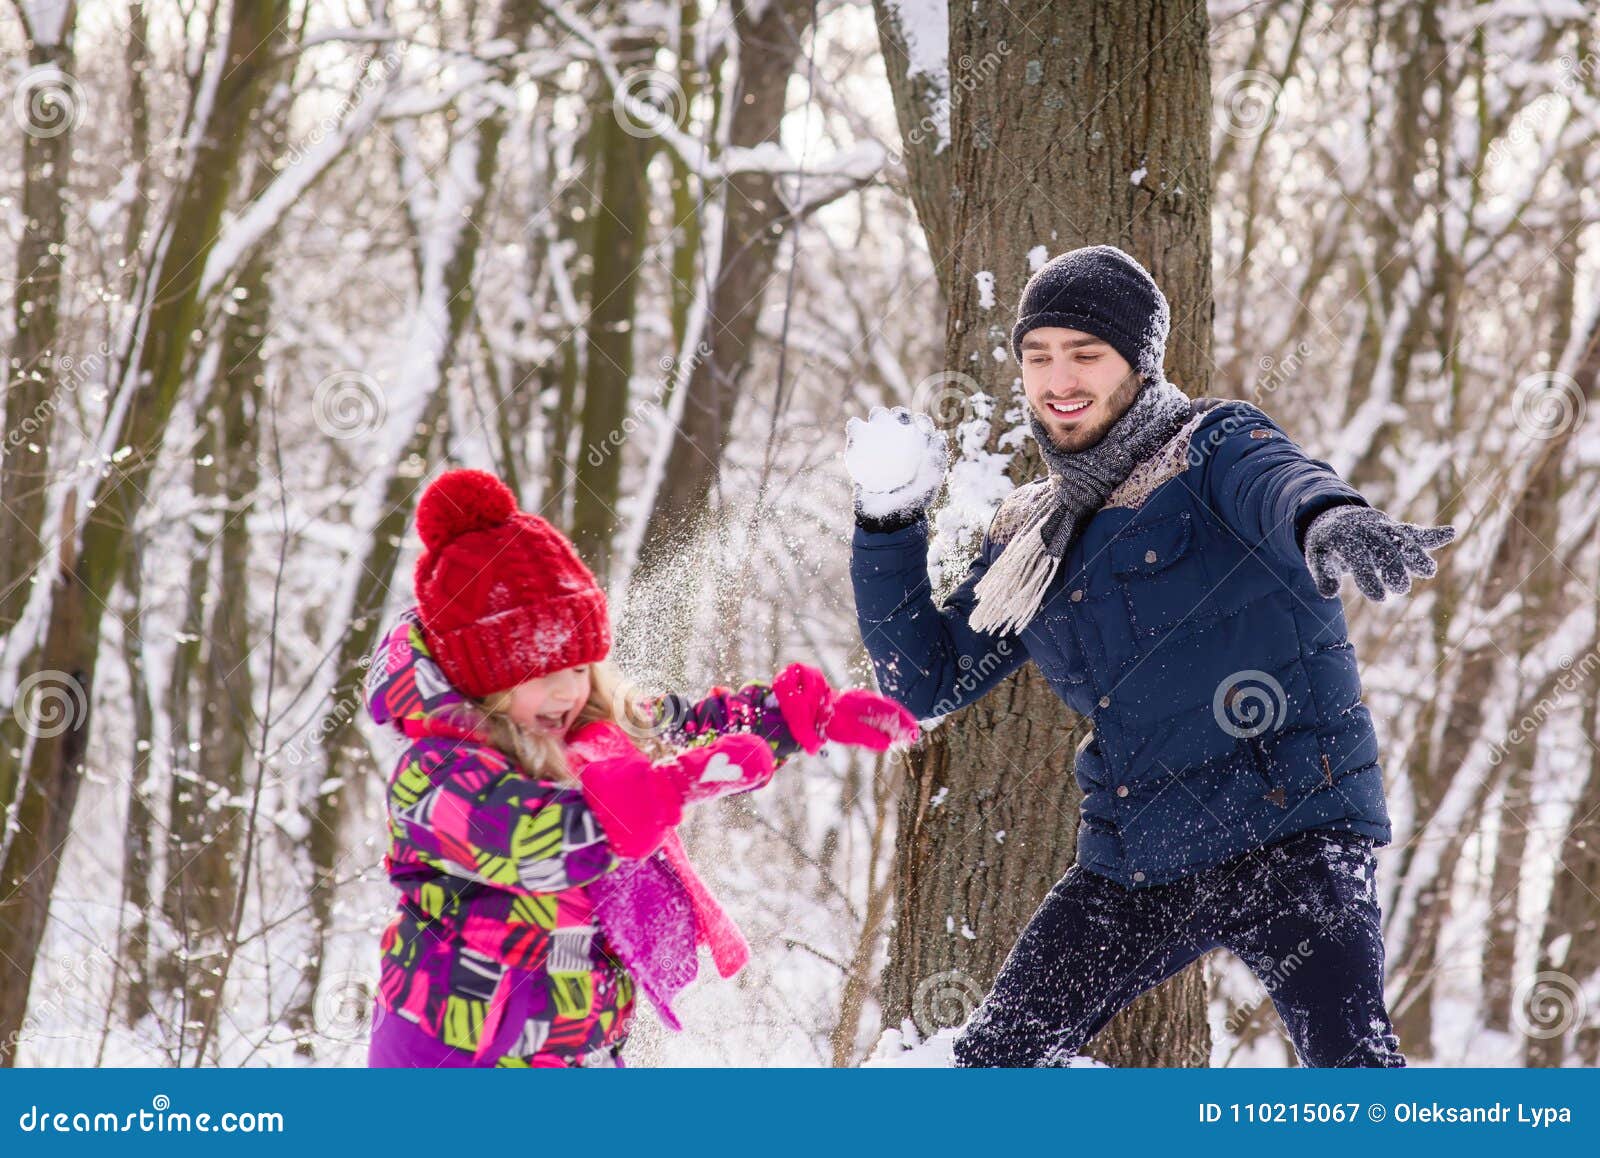 Снежки по взрослому. Игра в снежки. Люди играют в снежки. Игра в снежки фотосессия. Взрослые и дети играют в снежки.